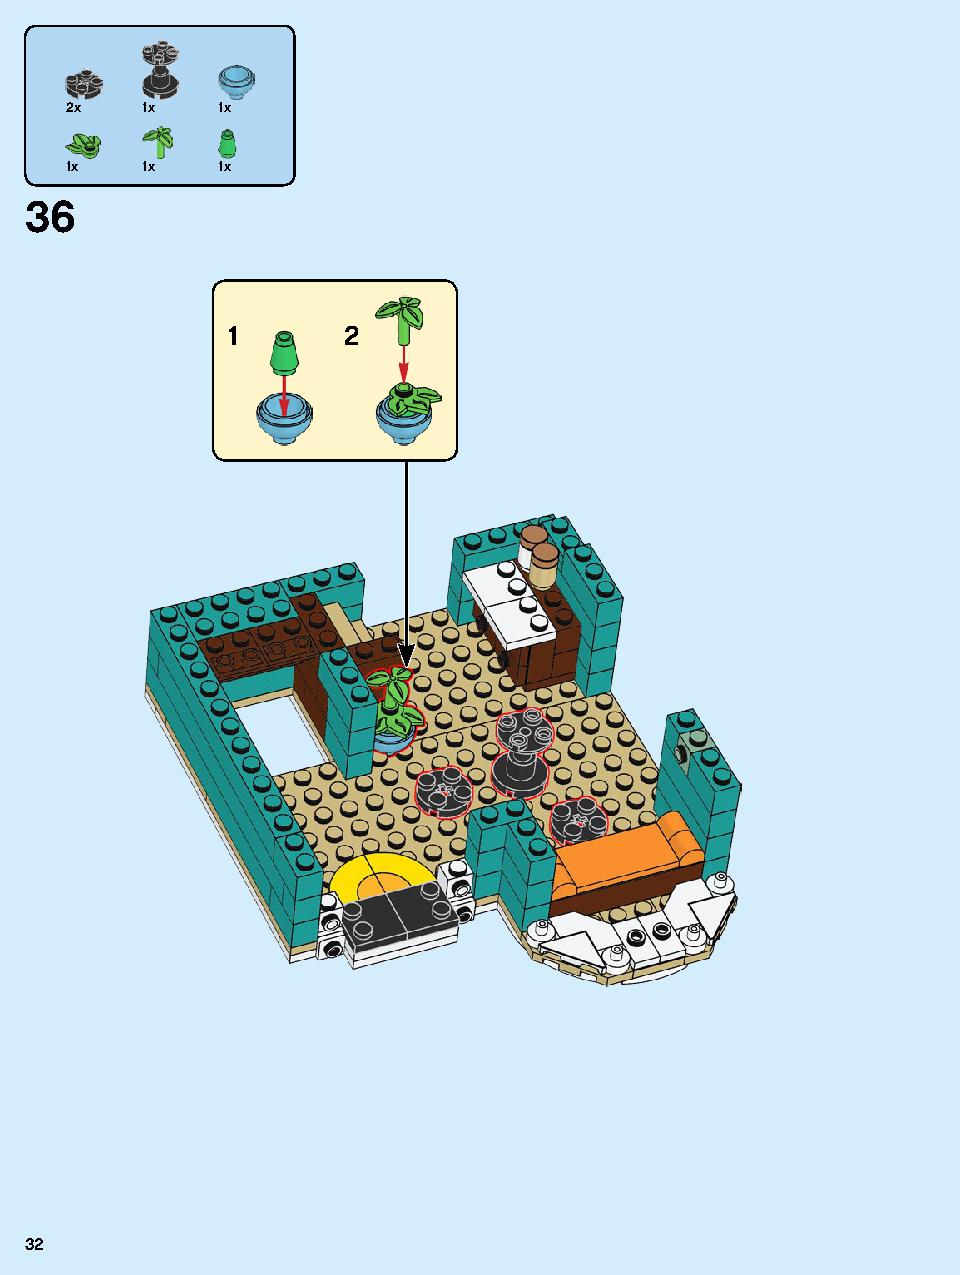 本屋さん 10270 レゴの商品情報 レゴの説明書・組立方法 32 page